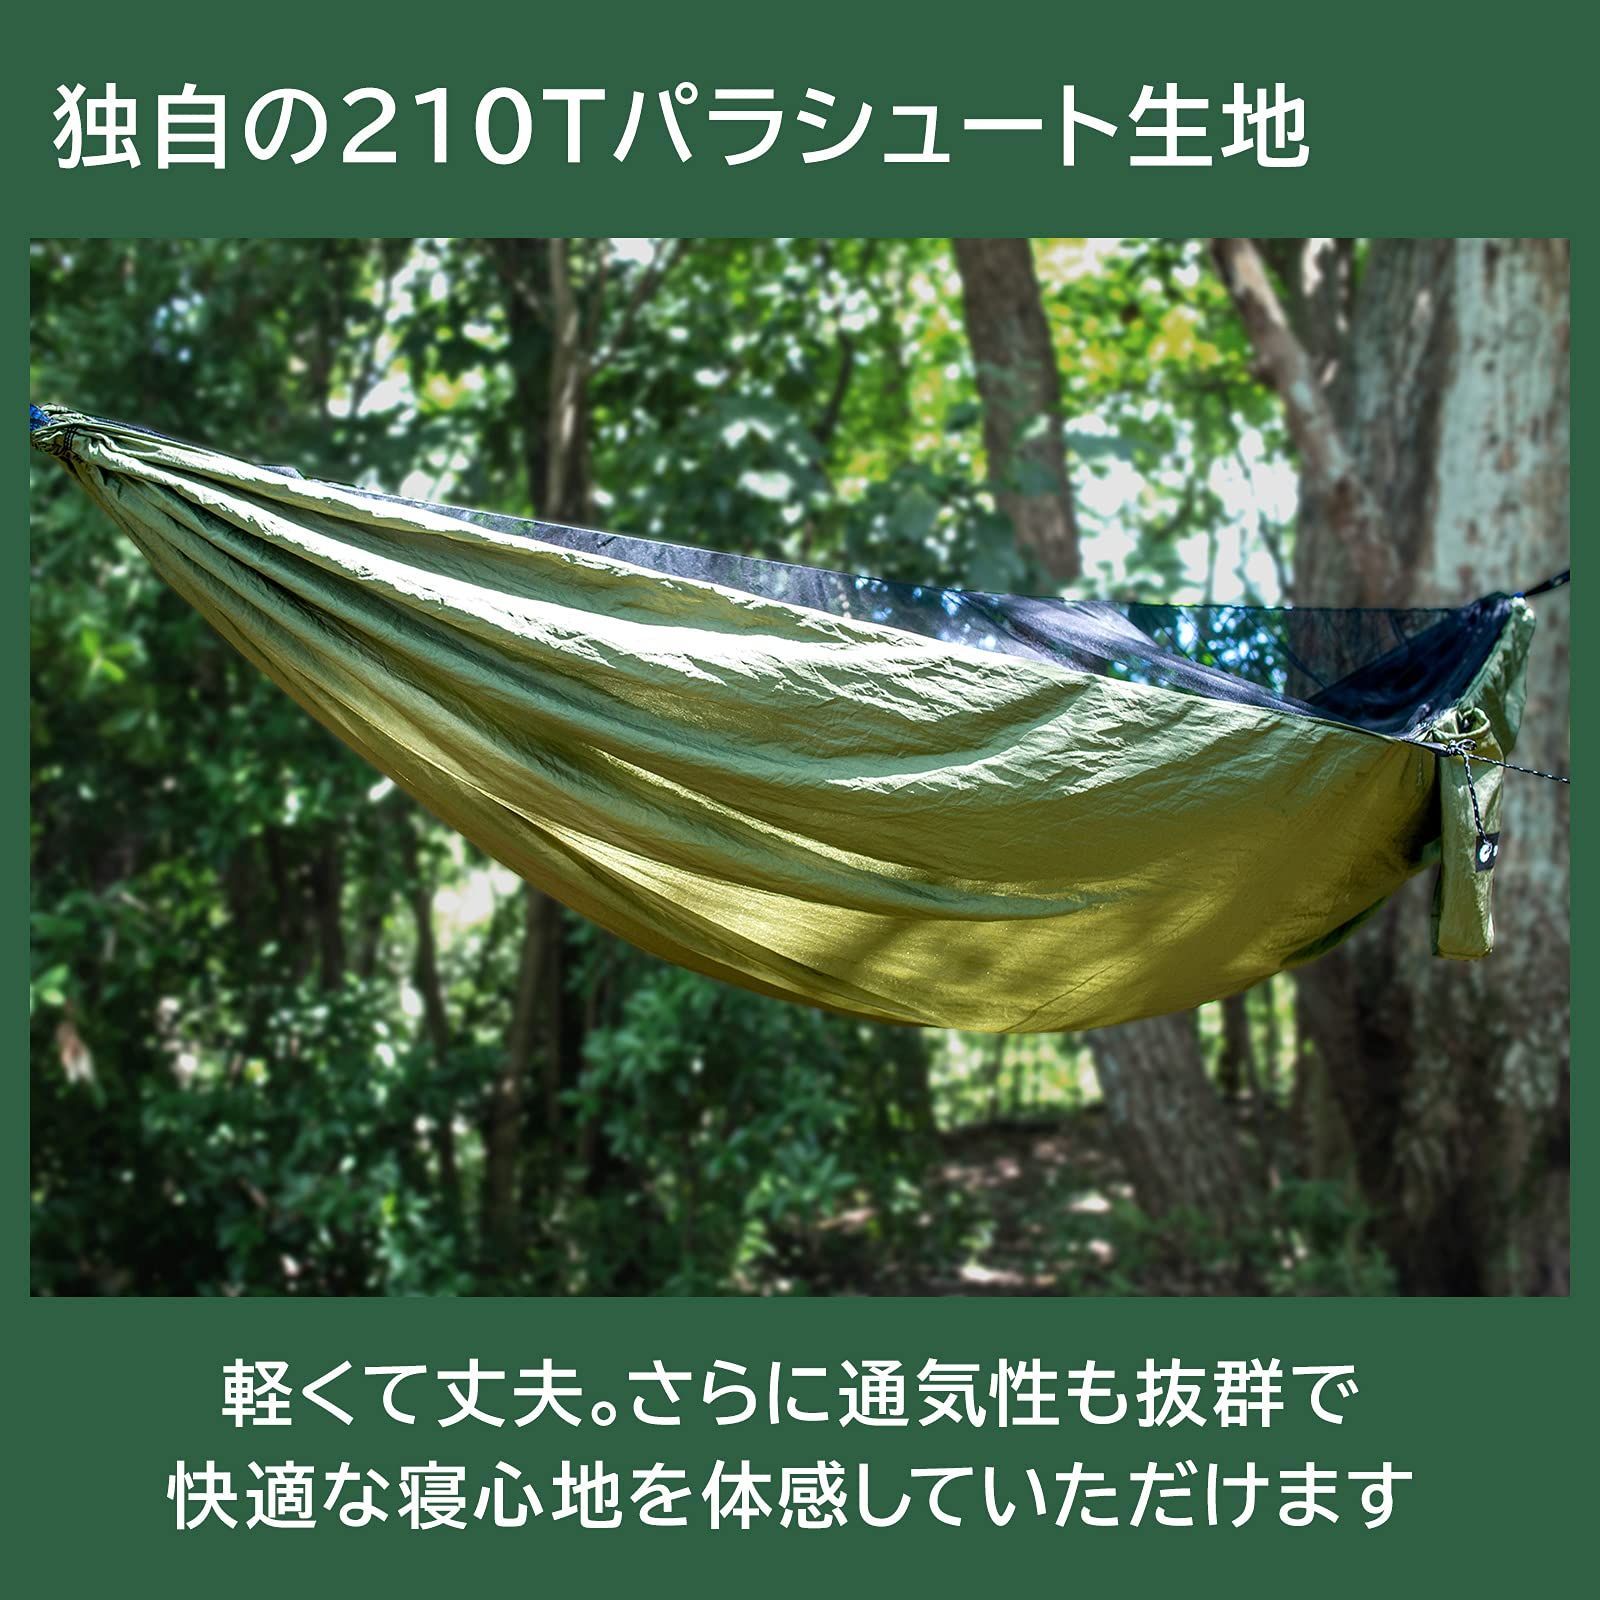 神戸発ブランドSheepNot ハンモック 蚊帳付き ソロキャンプ 蚊帳吊りロー